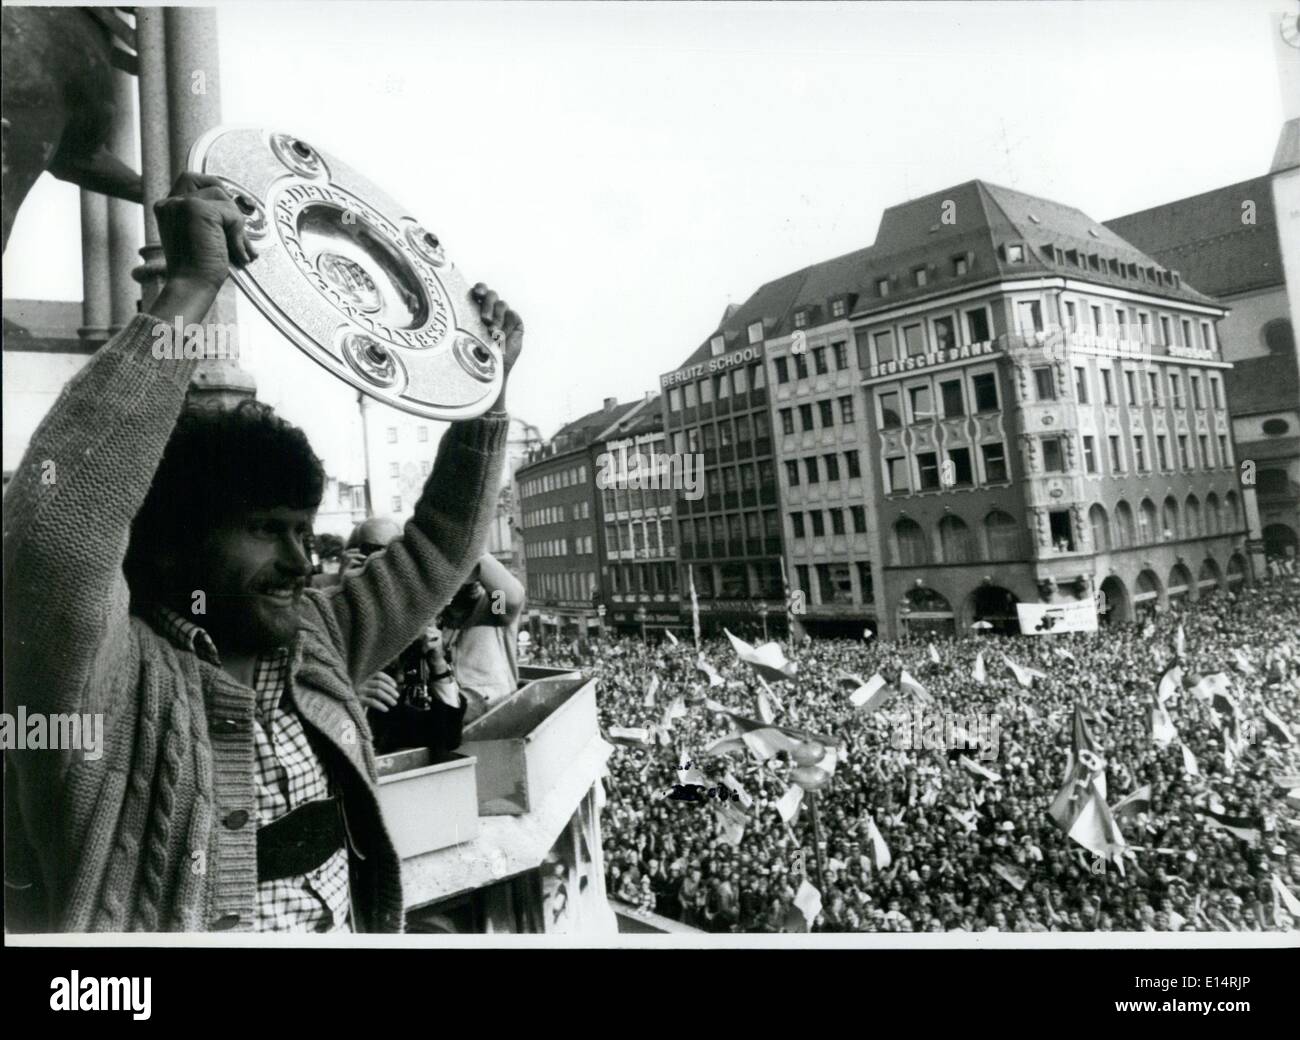 Apr. 18, 2012 - Il giubilo e la turbolenza circondato il nuovo campione tedesco di calcio FC Bayern Muchen: Primo circa 73.000 visitatori celebrato con entusiasmo la squadra vincente dopo le 2:1 win over Eintracht b raunschweig nell'ultimo gioco del calcio Bundesliga stagione. Poi al sabato sera può 31st, 1980 10.000 tifosi giunti al Monaco di Baviera/Germania Ovest Marienplatz di fronte al municipio per dare ai giocatori una sensazionale benvenuto. Il sindaco di Monaco di Baviera presenta il capitano della squadra di calcio del FC Bayern Munchen una tazza grande Foto Stock